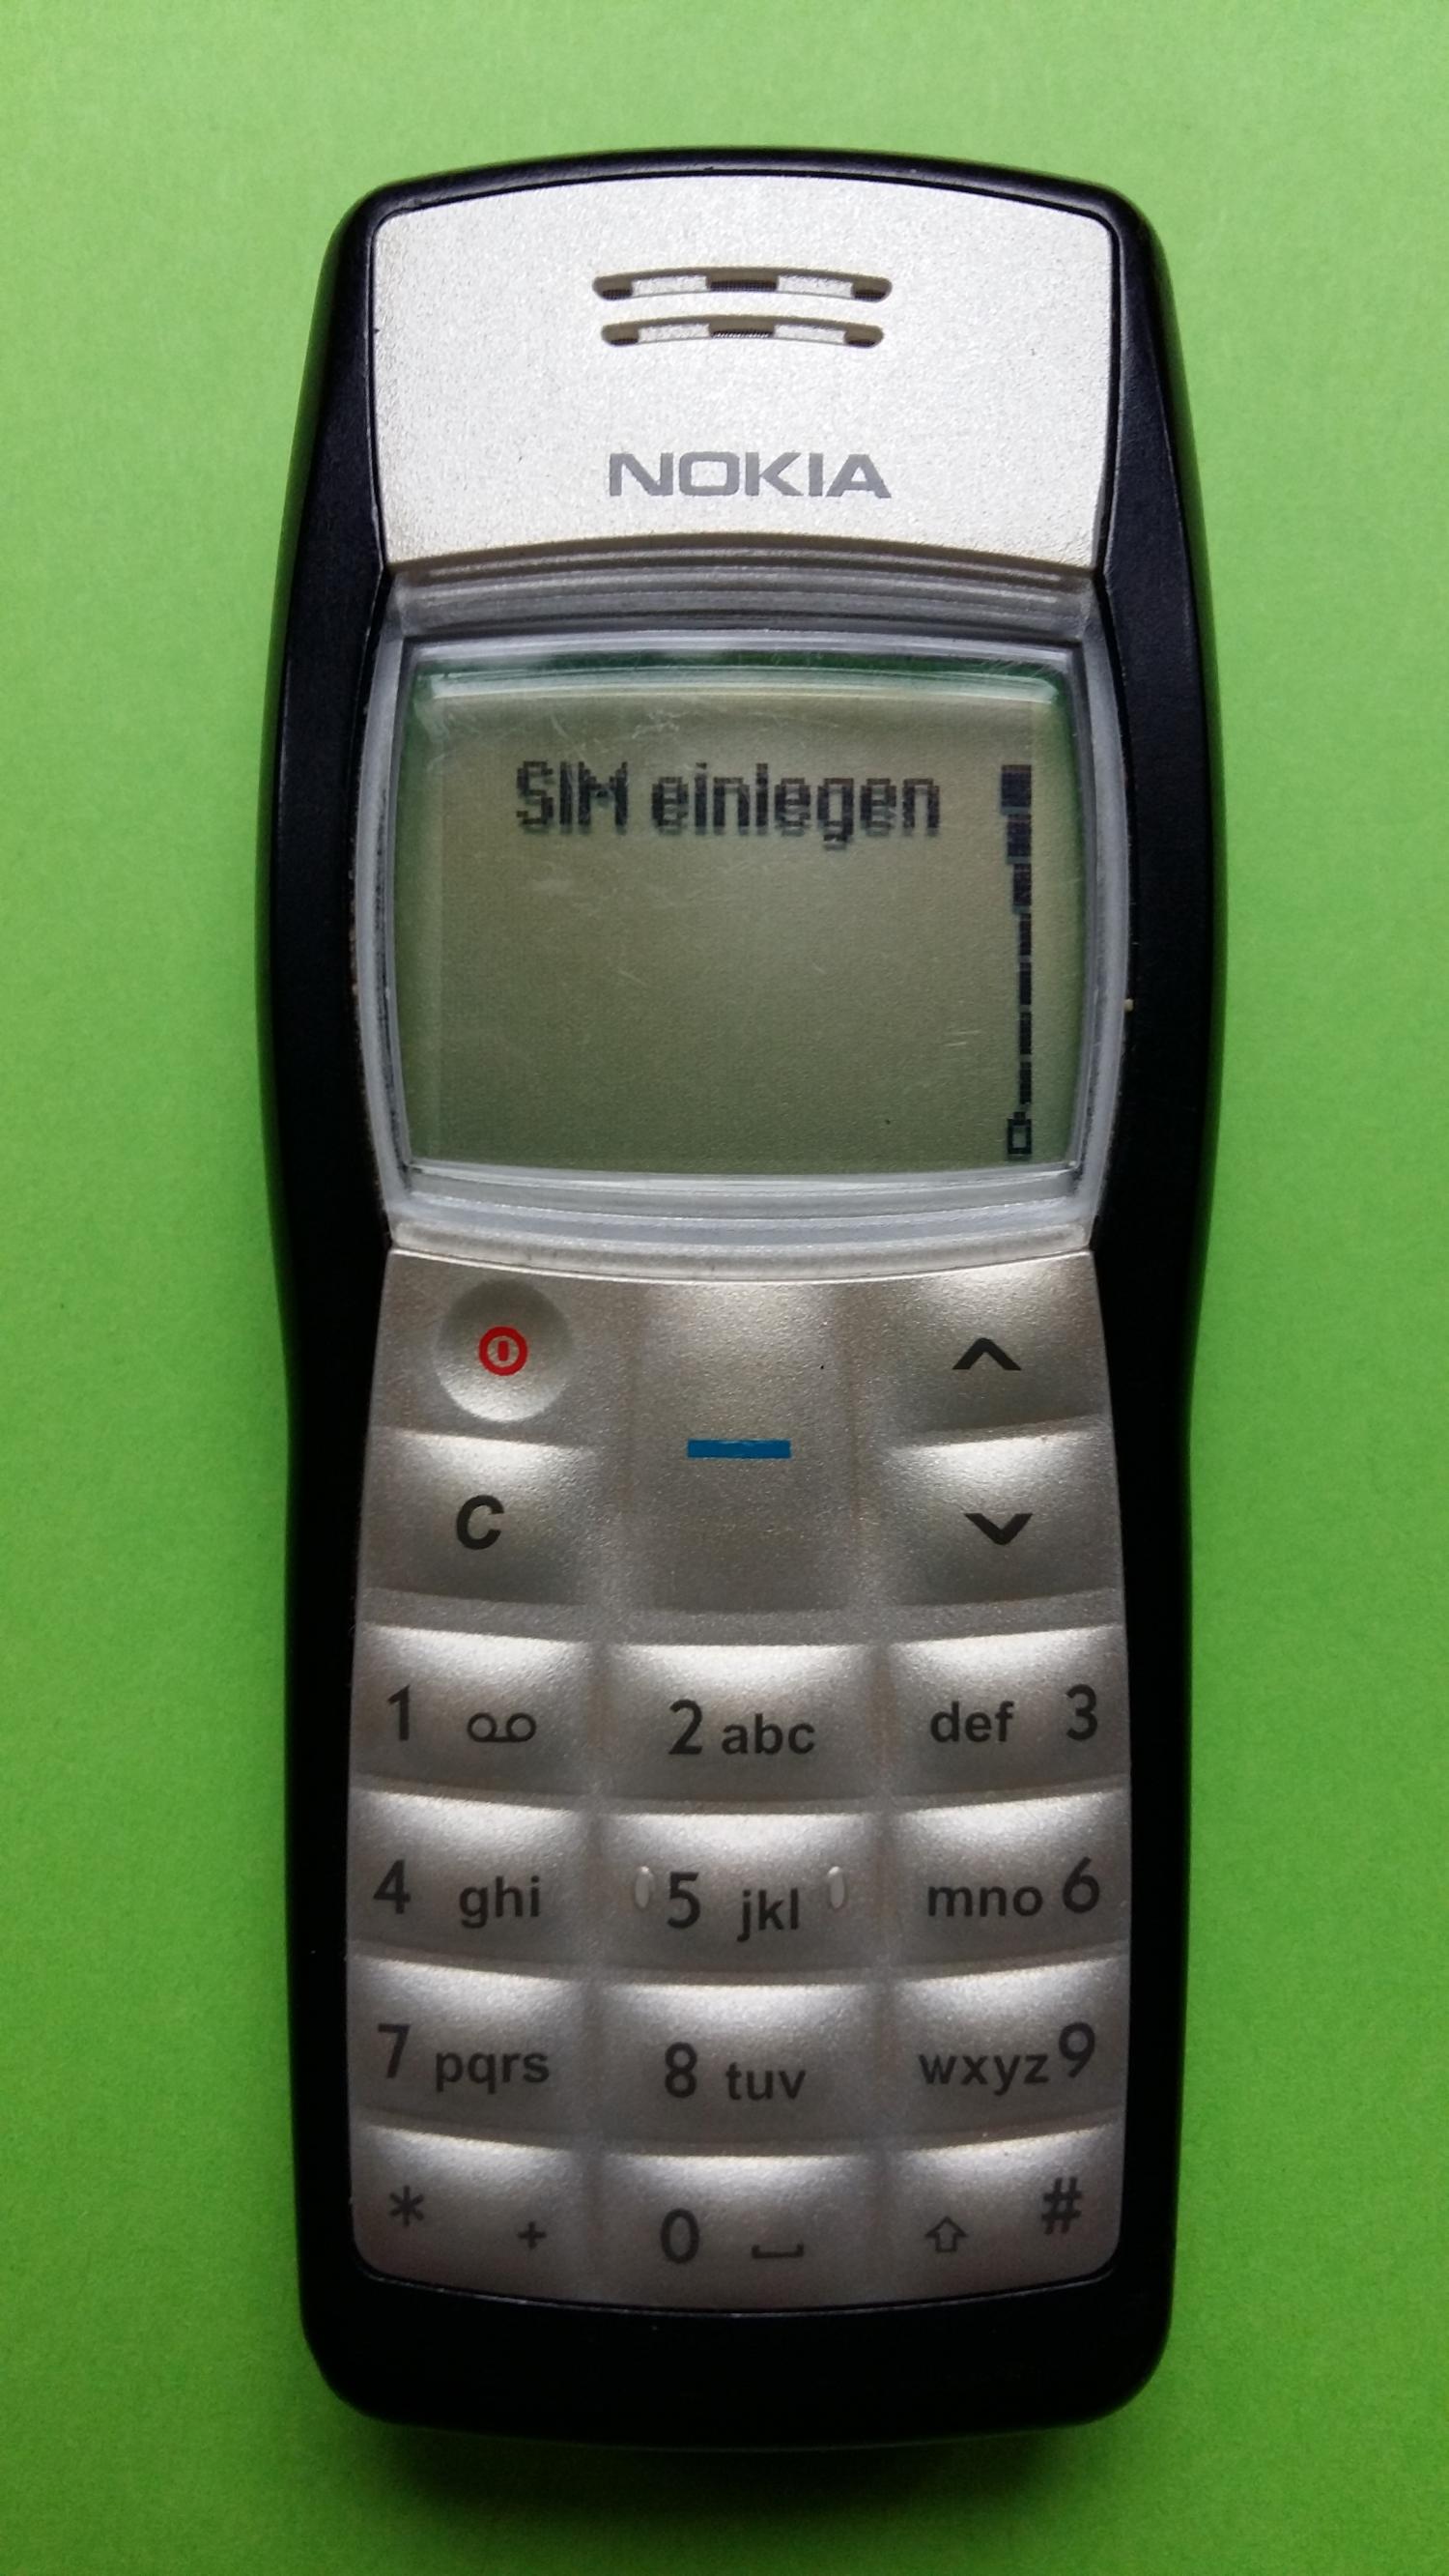 image-7300313-Nokia 1100 (5)1.jpg